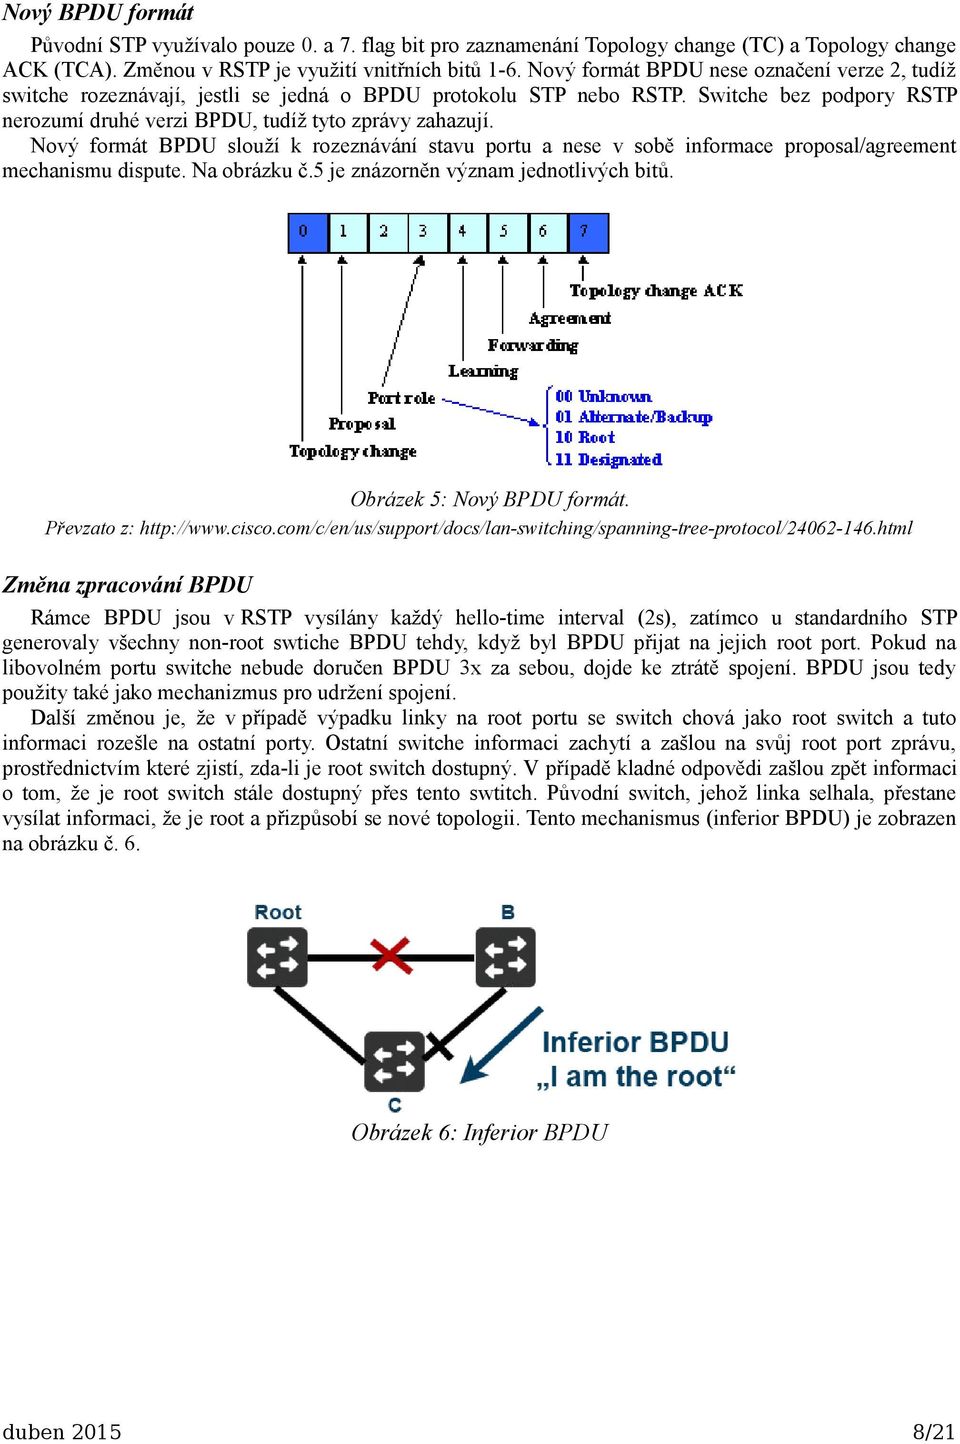 Nový formát BPDU slouží k rozeznávání stavu portu a nese v sobě informace proposal/agreement mechanismu dispute. Na obrázku č.5 je znázorněn význam jednotlivých bitů. Obrázek 5: Nový BPDU formát.